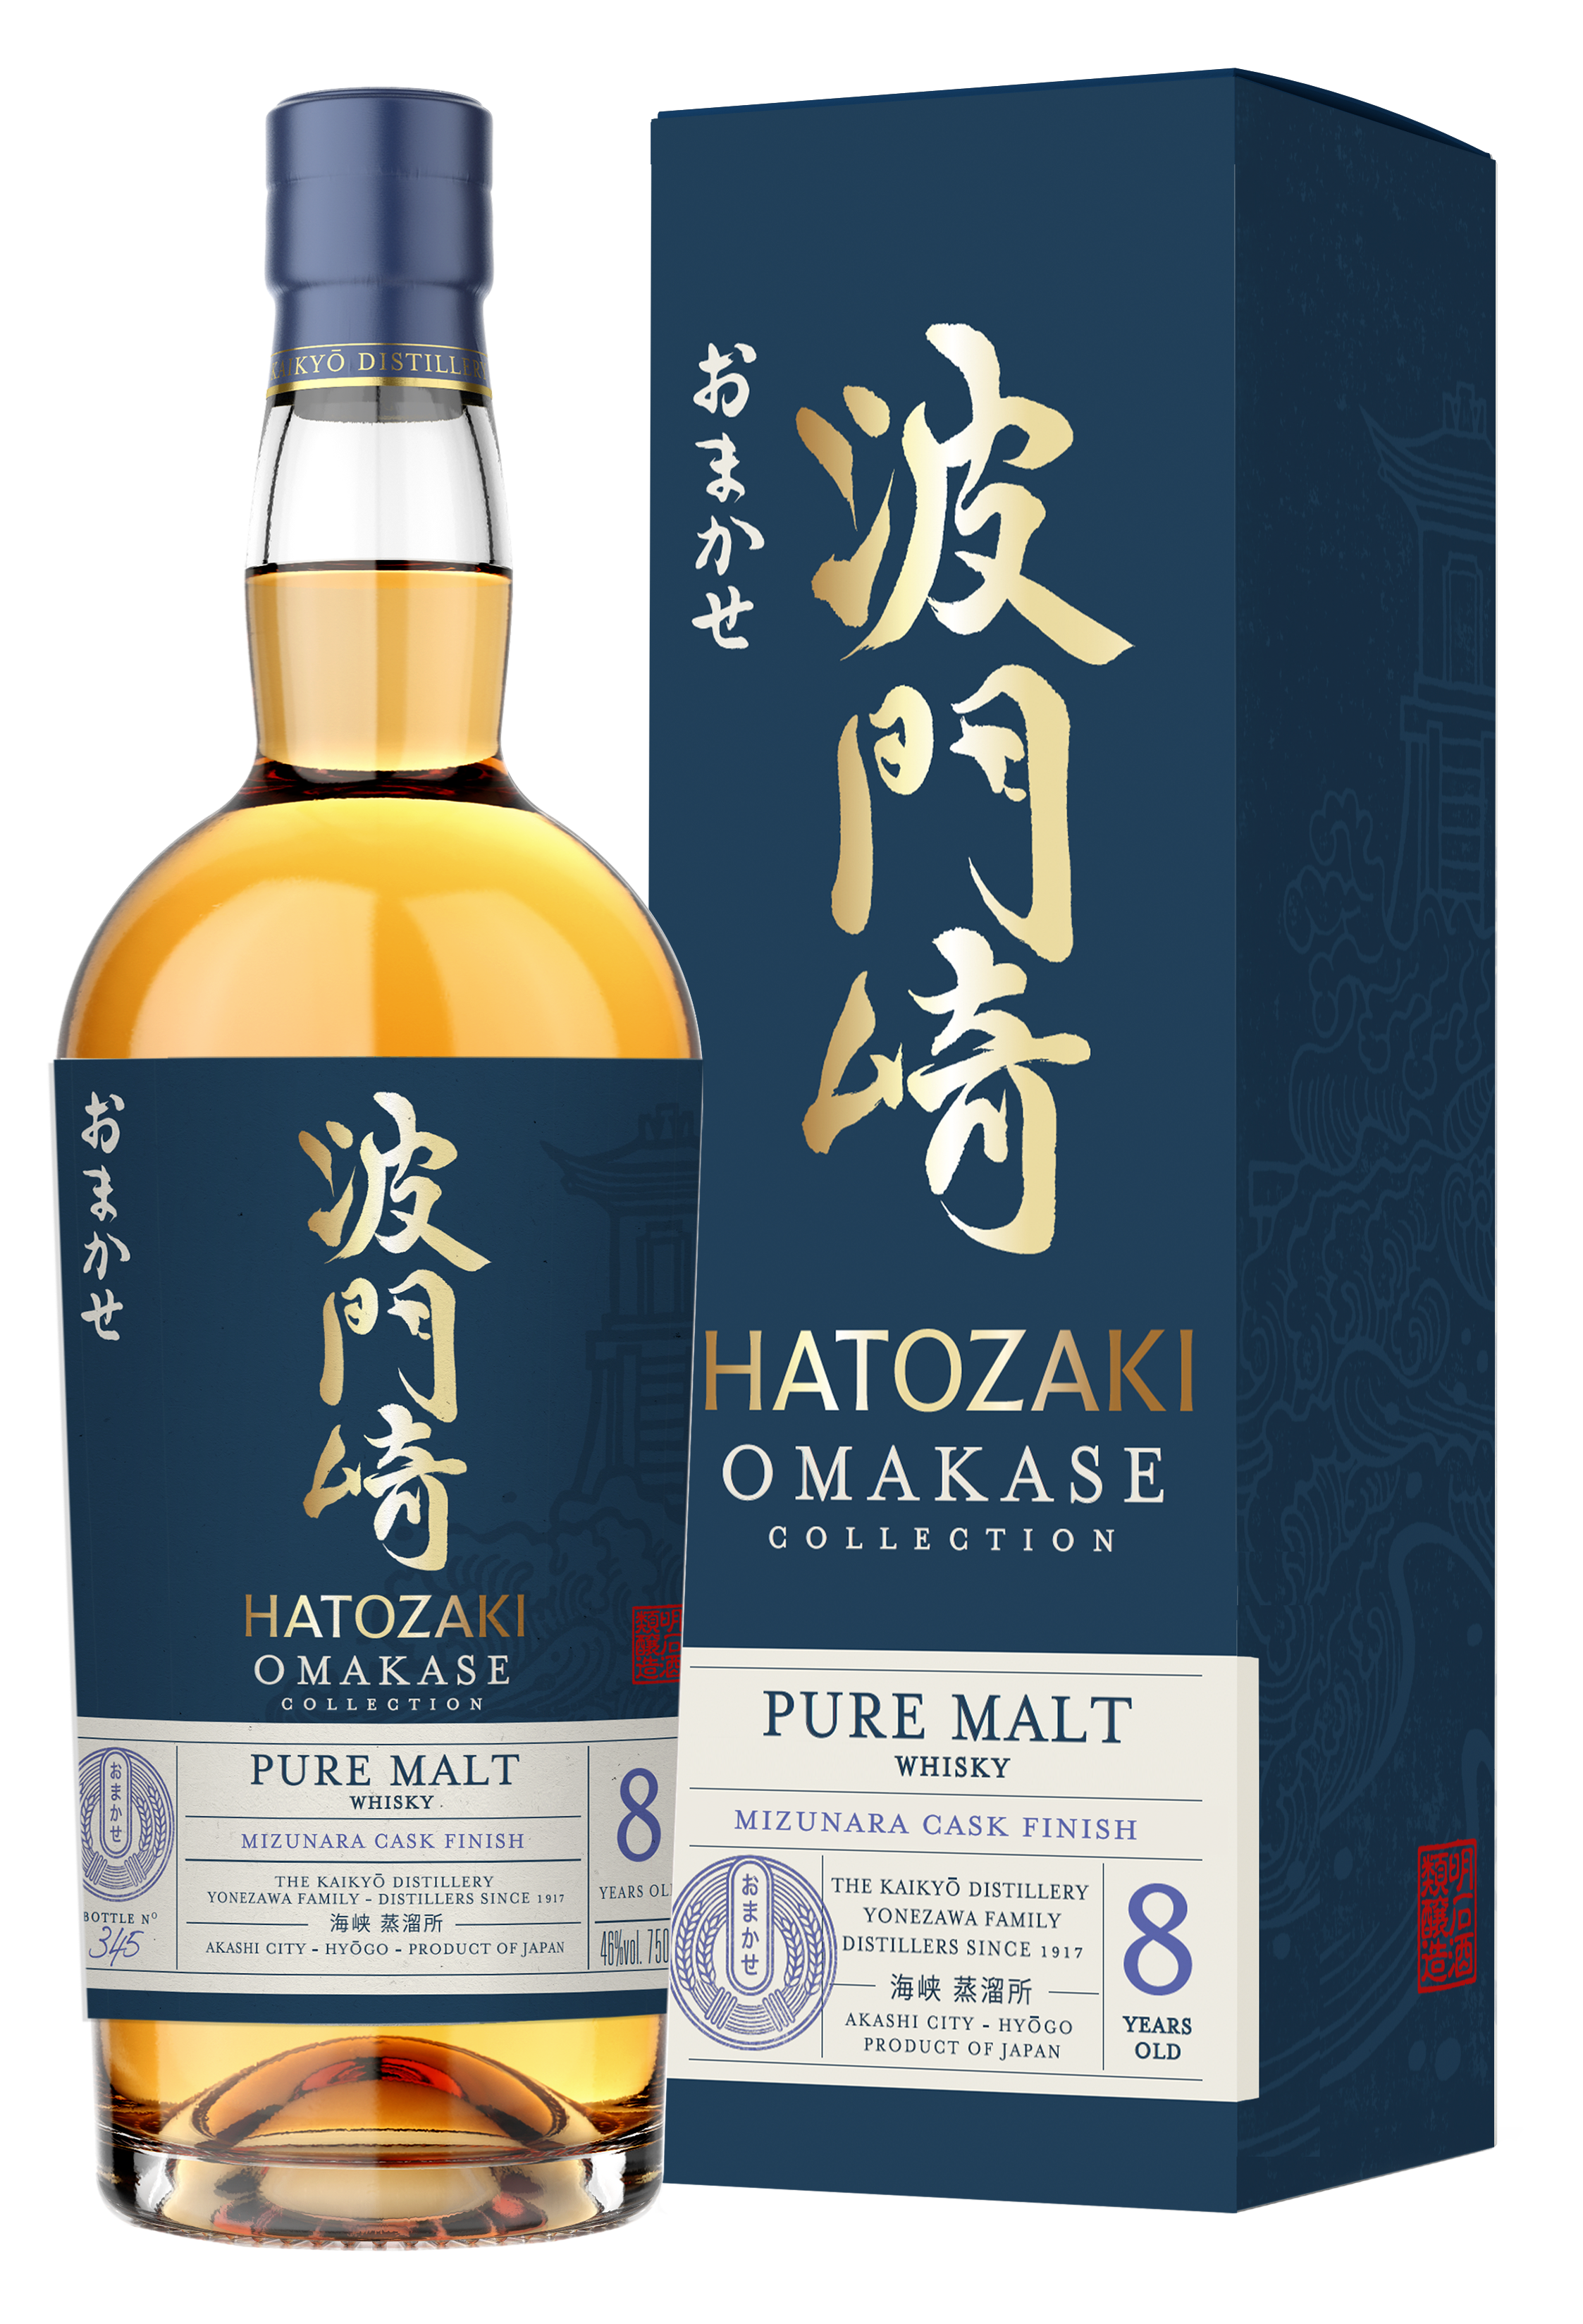 Hatozaki Omakase US Bottle and Box